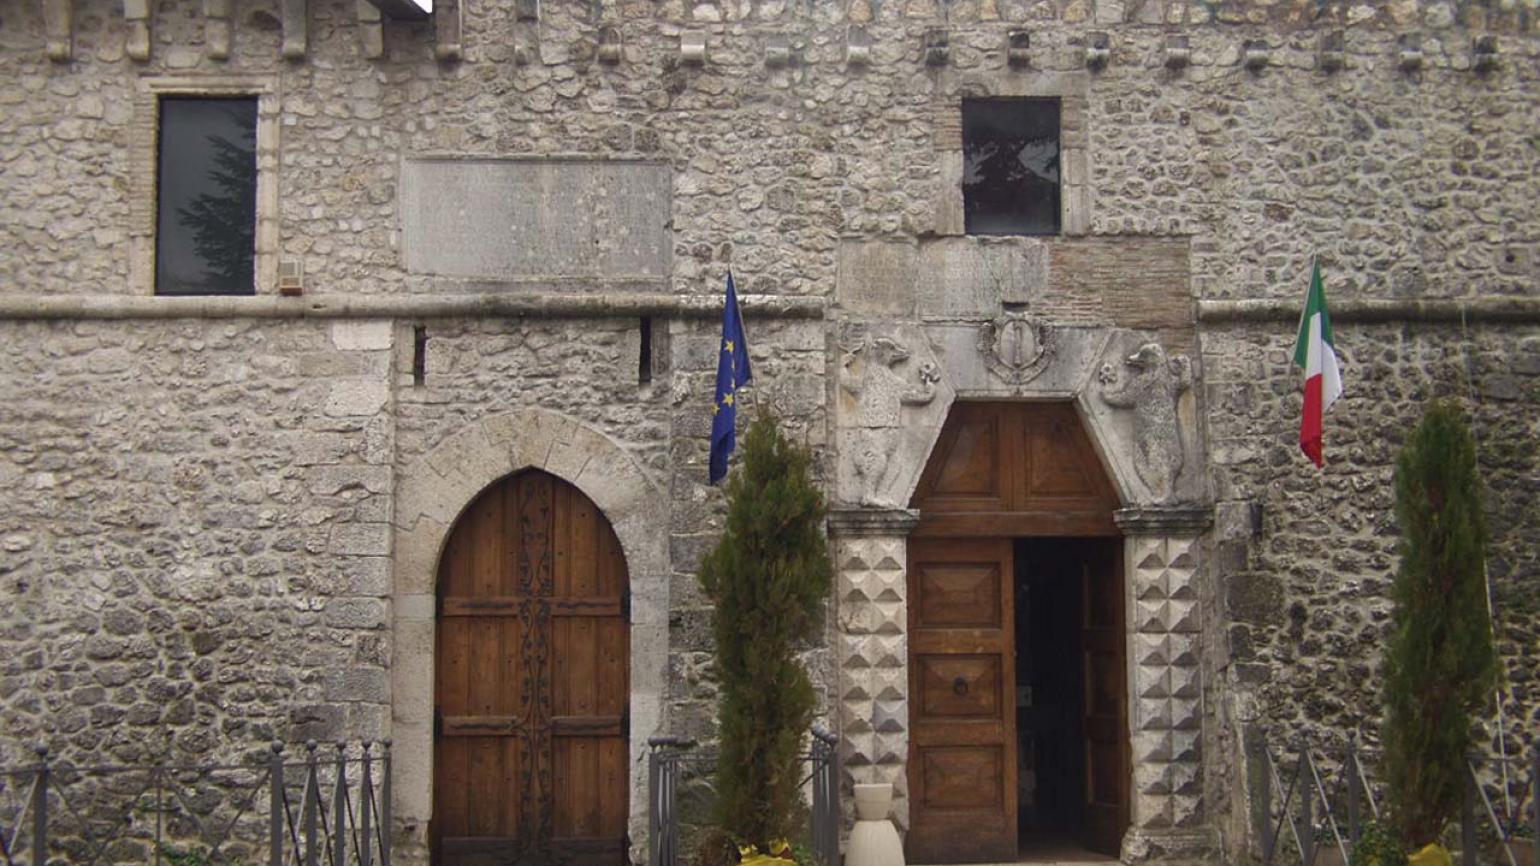 Avezzano (Aq), il Castello Orsini Colonna, gli accessi principali al castello